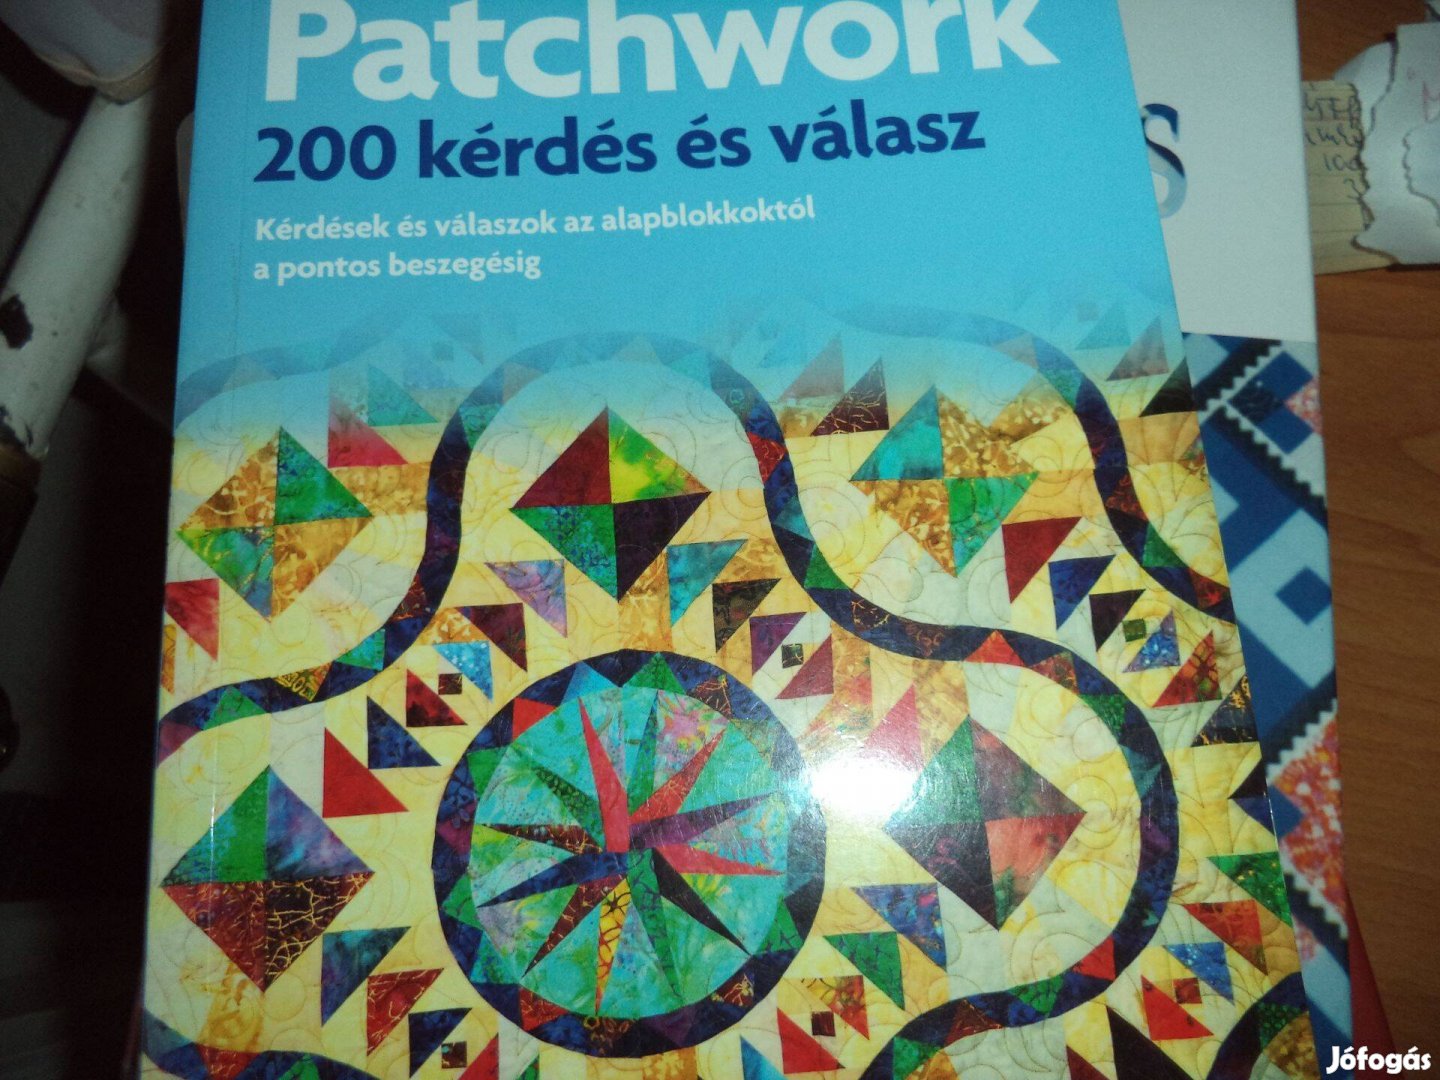 Patchwork 200 kérdés könyv